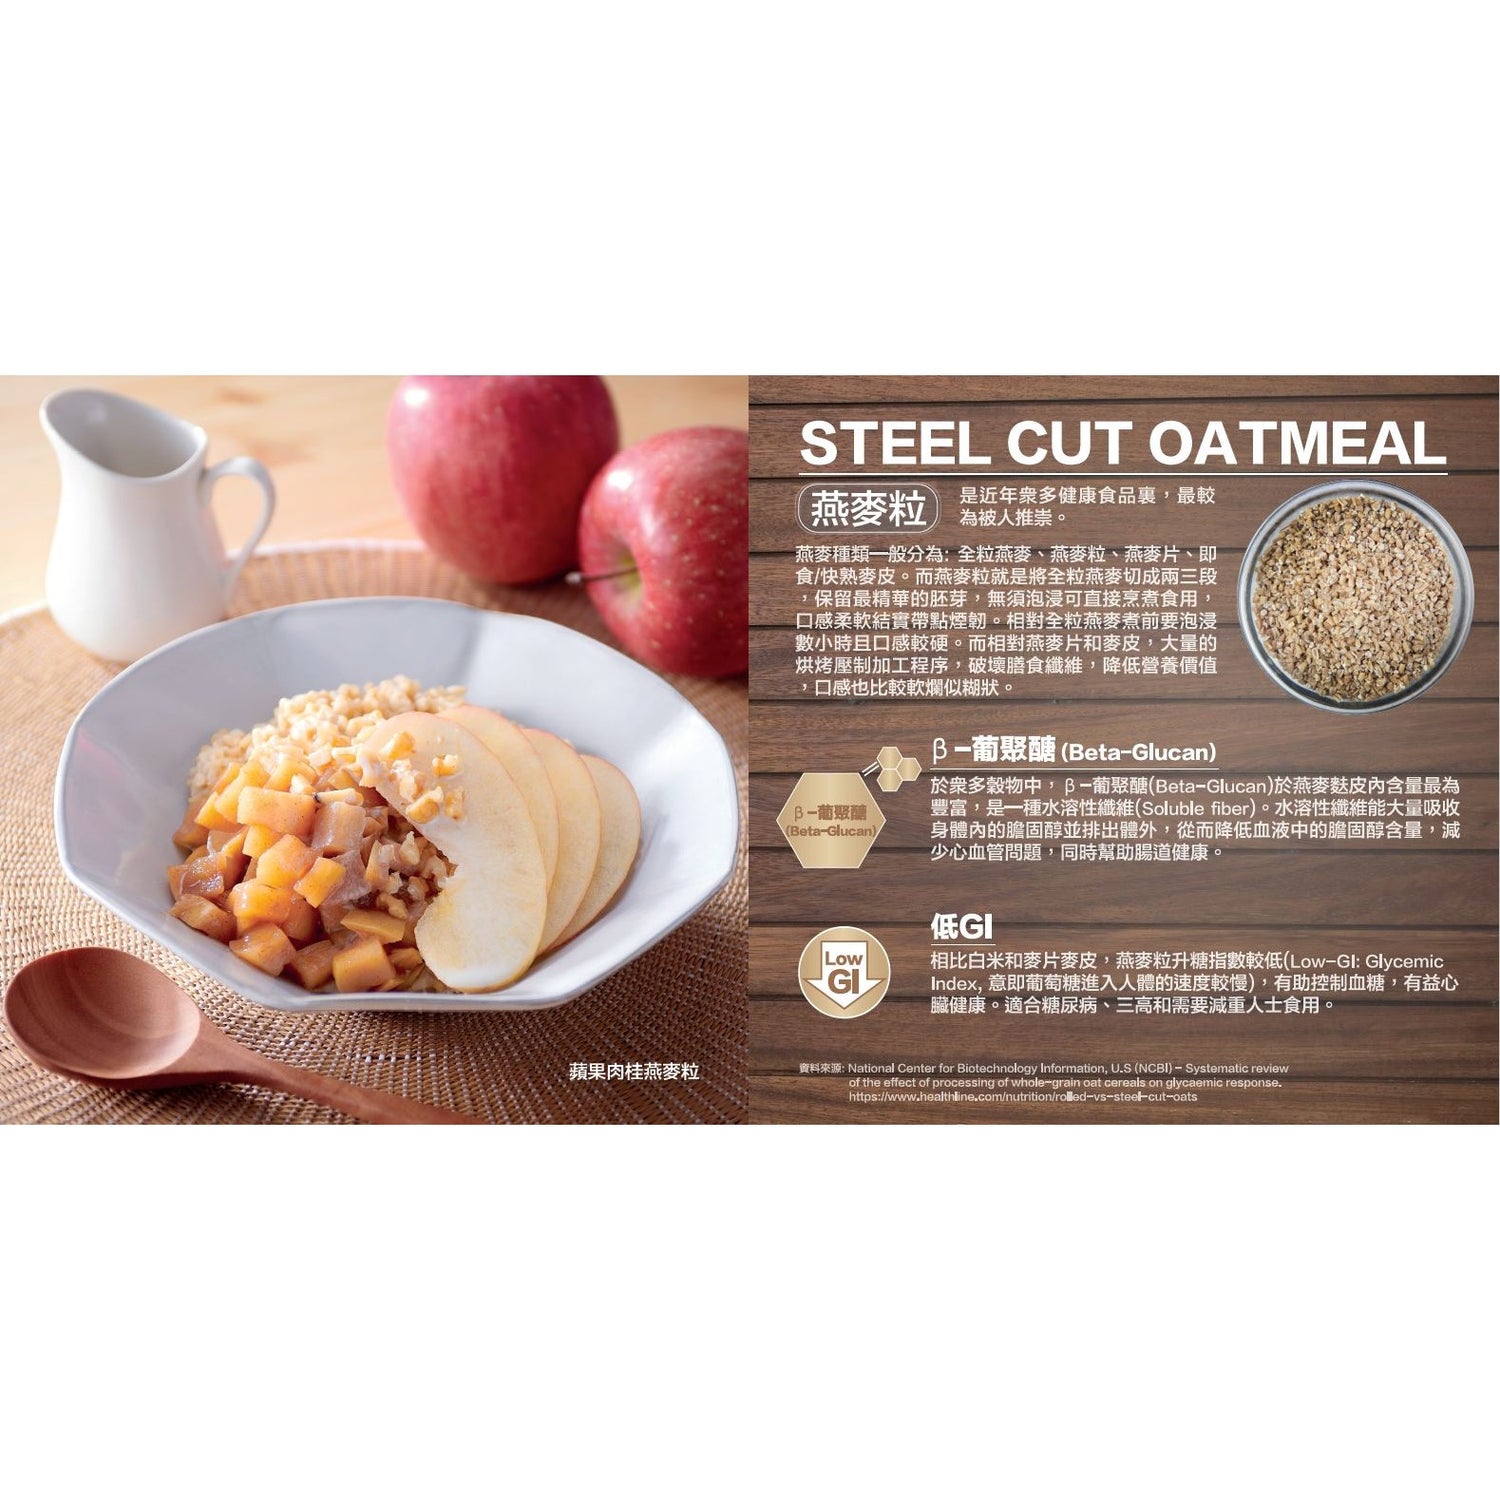 Zojirushi Rice Cooker NL-GAQ10/18 (Made in Japan)